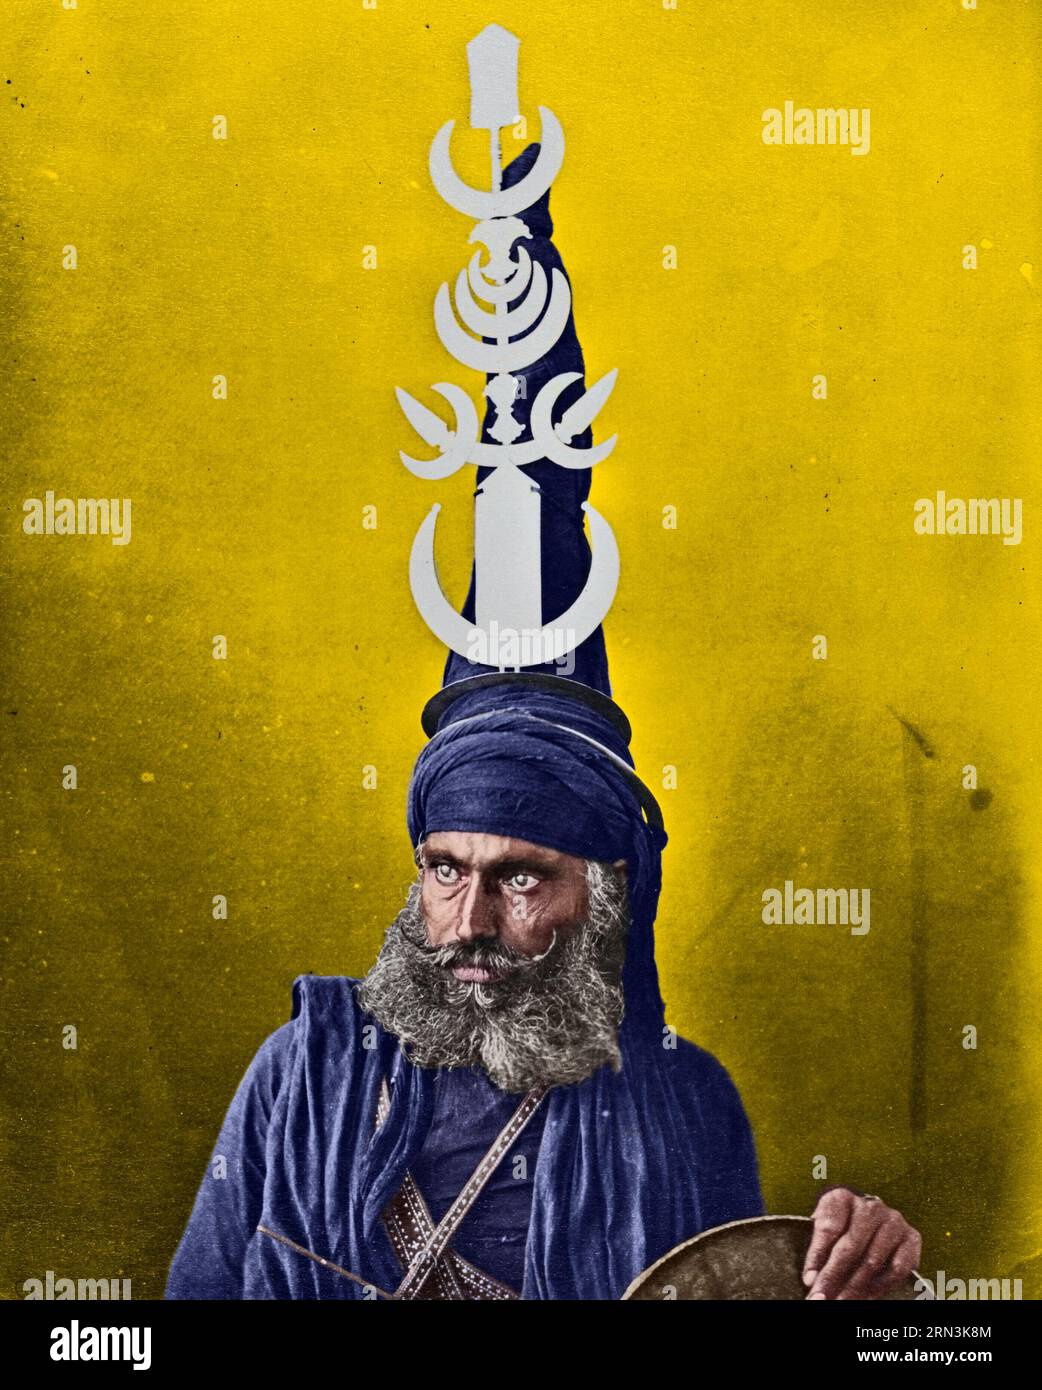 Porträt eines Nihang oder Akali. Porträt eines Sikh-Kriegers, auch bekannt als Nihang oder Akali, mit einem raffinierten konischen Turban, verziert mit Chakram Stockfoto